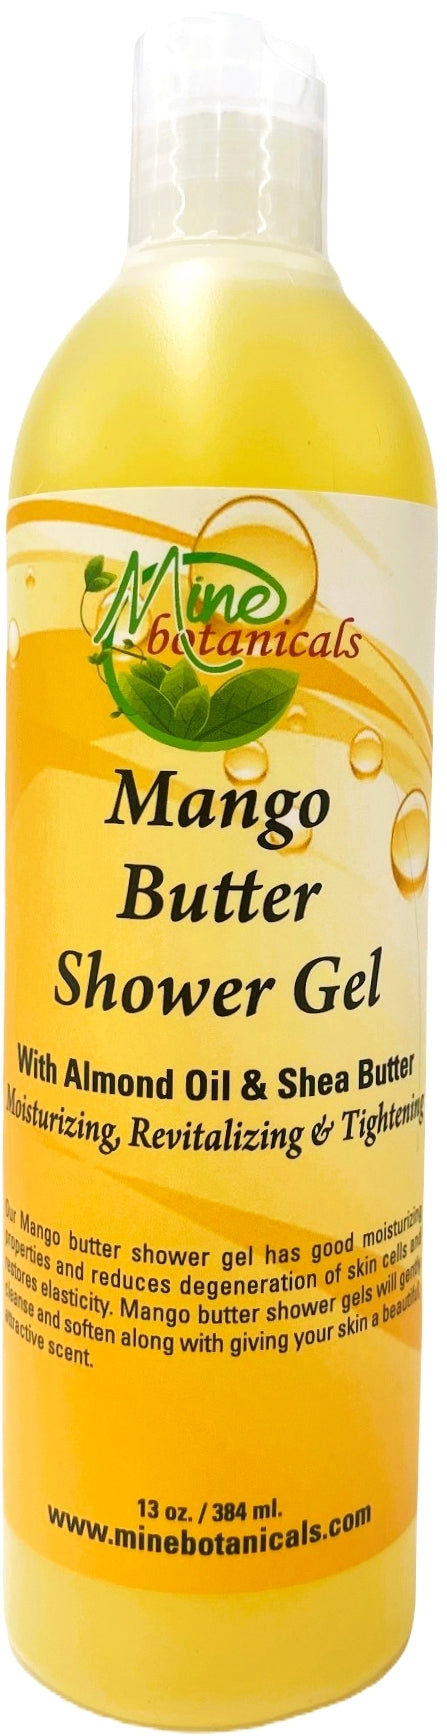 Mango Butter Shower Gel